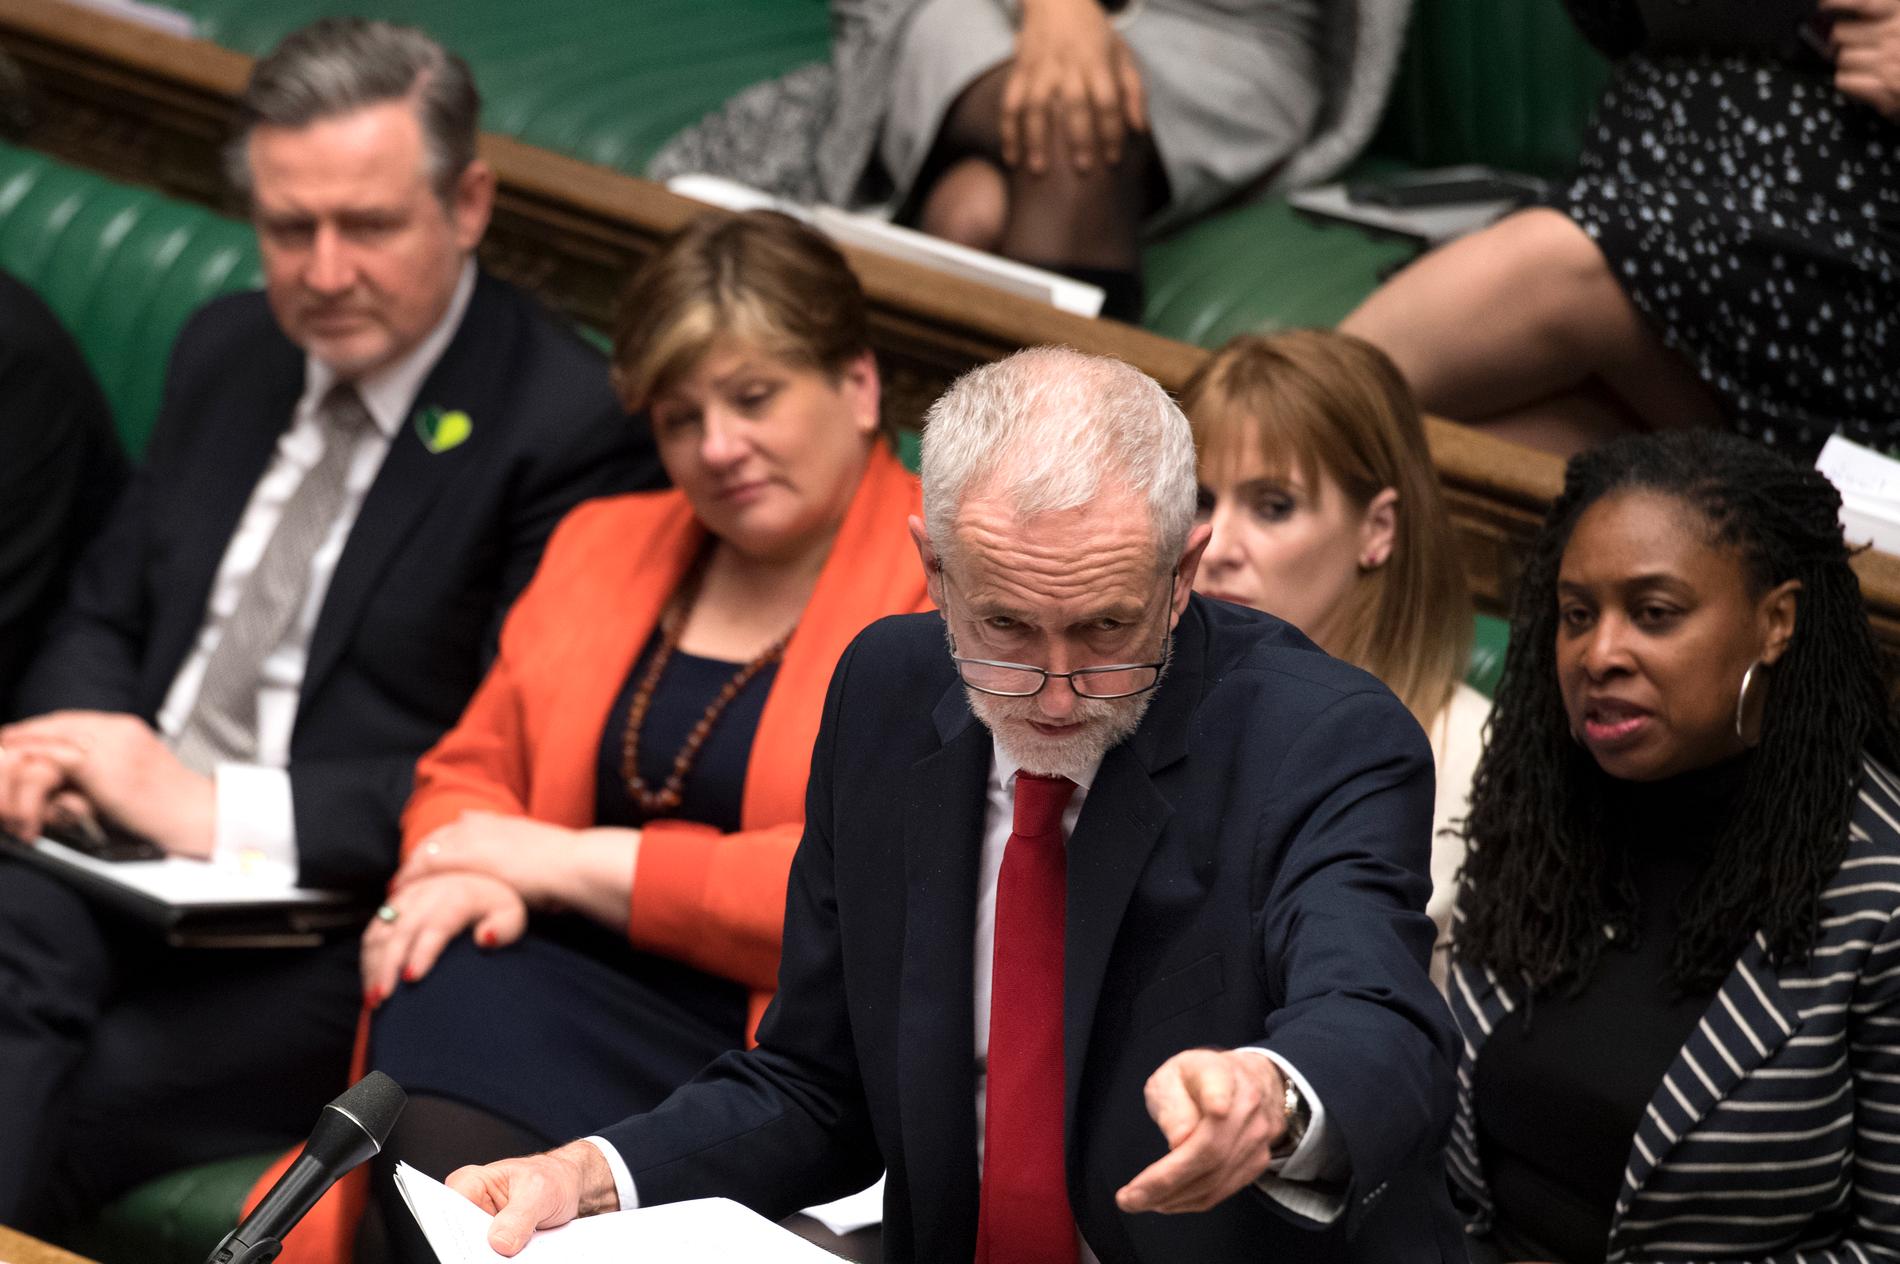 Jeremy Corbyn i parlamentet på tisdagen inför omröstningen.